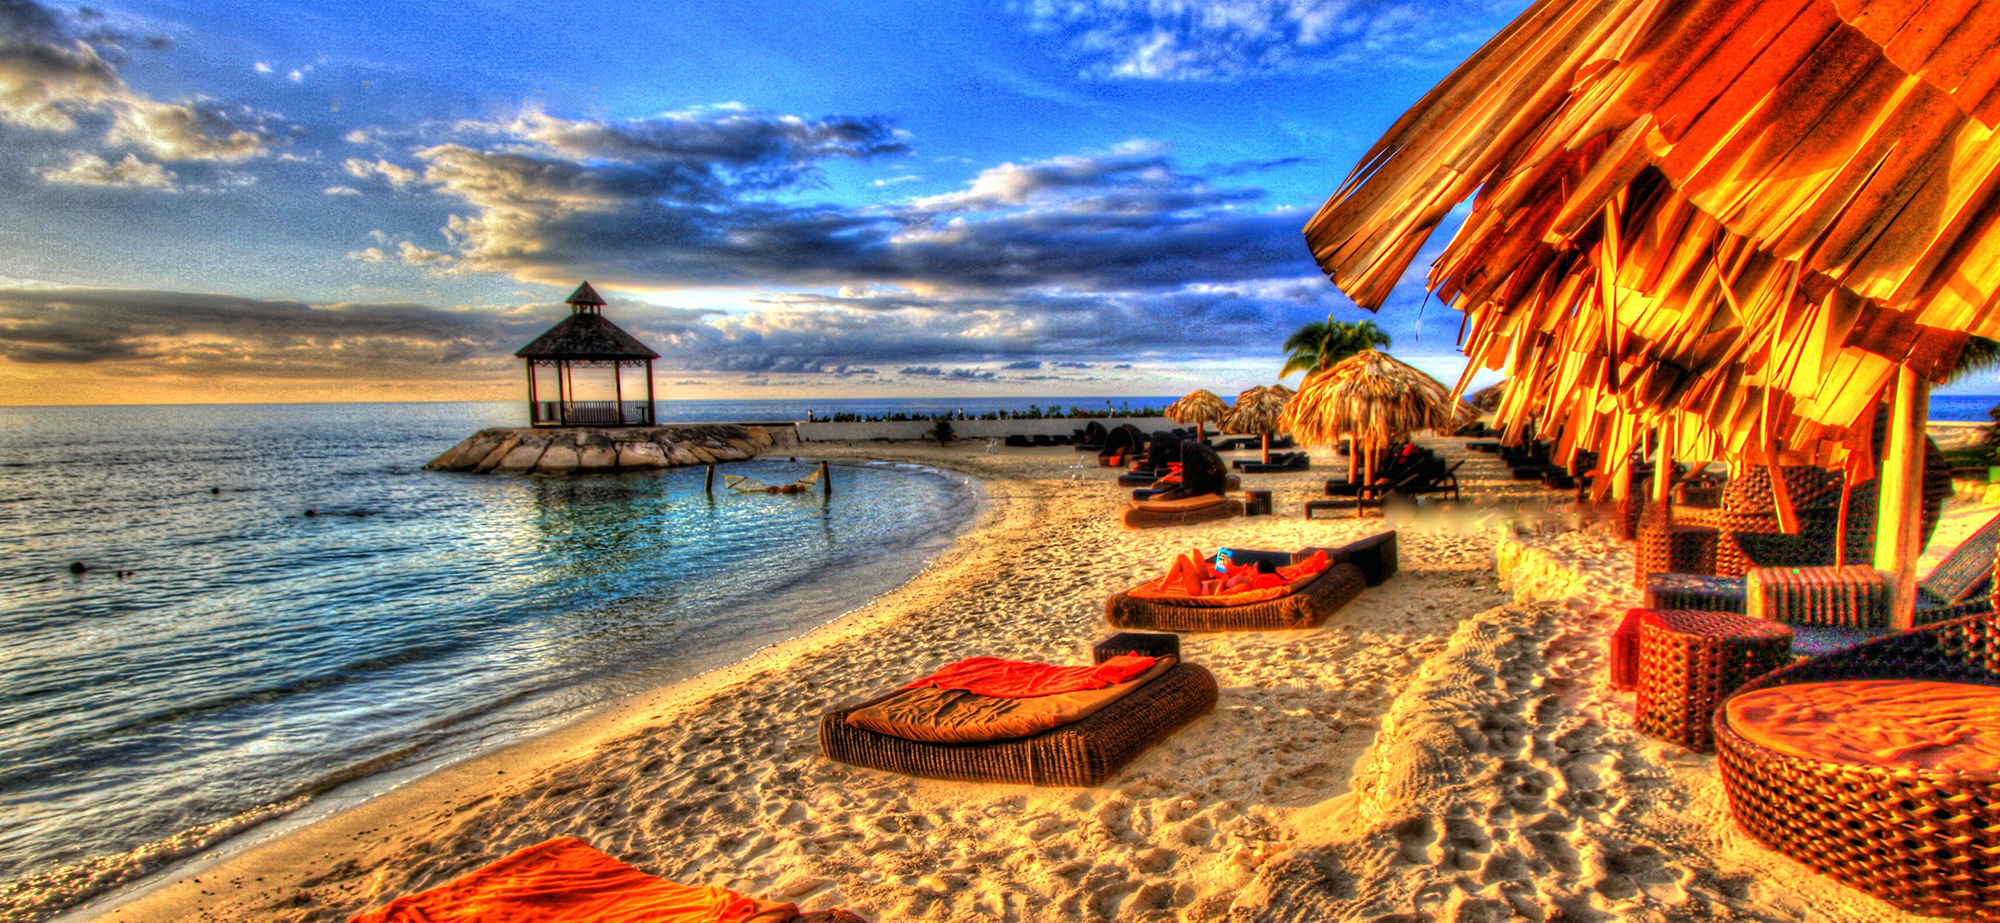 Jamaican resort looking over beach